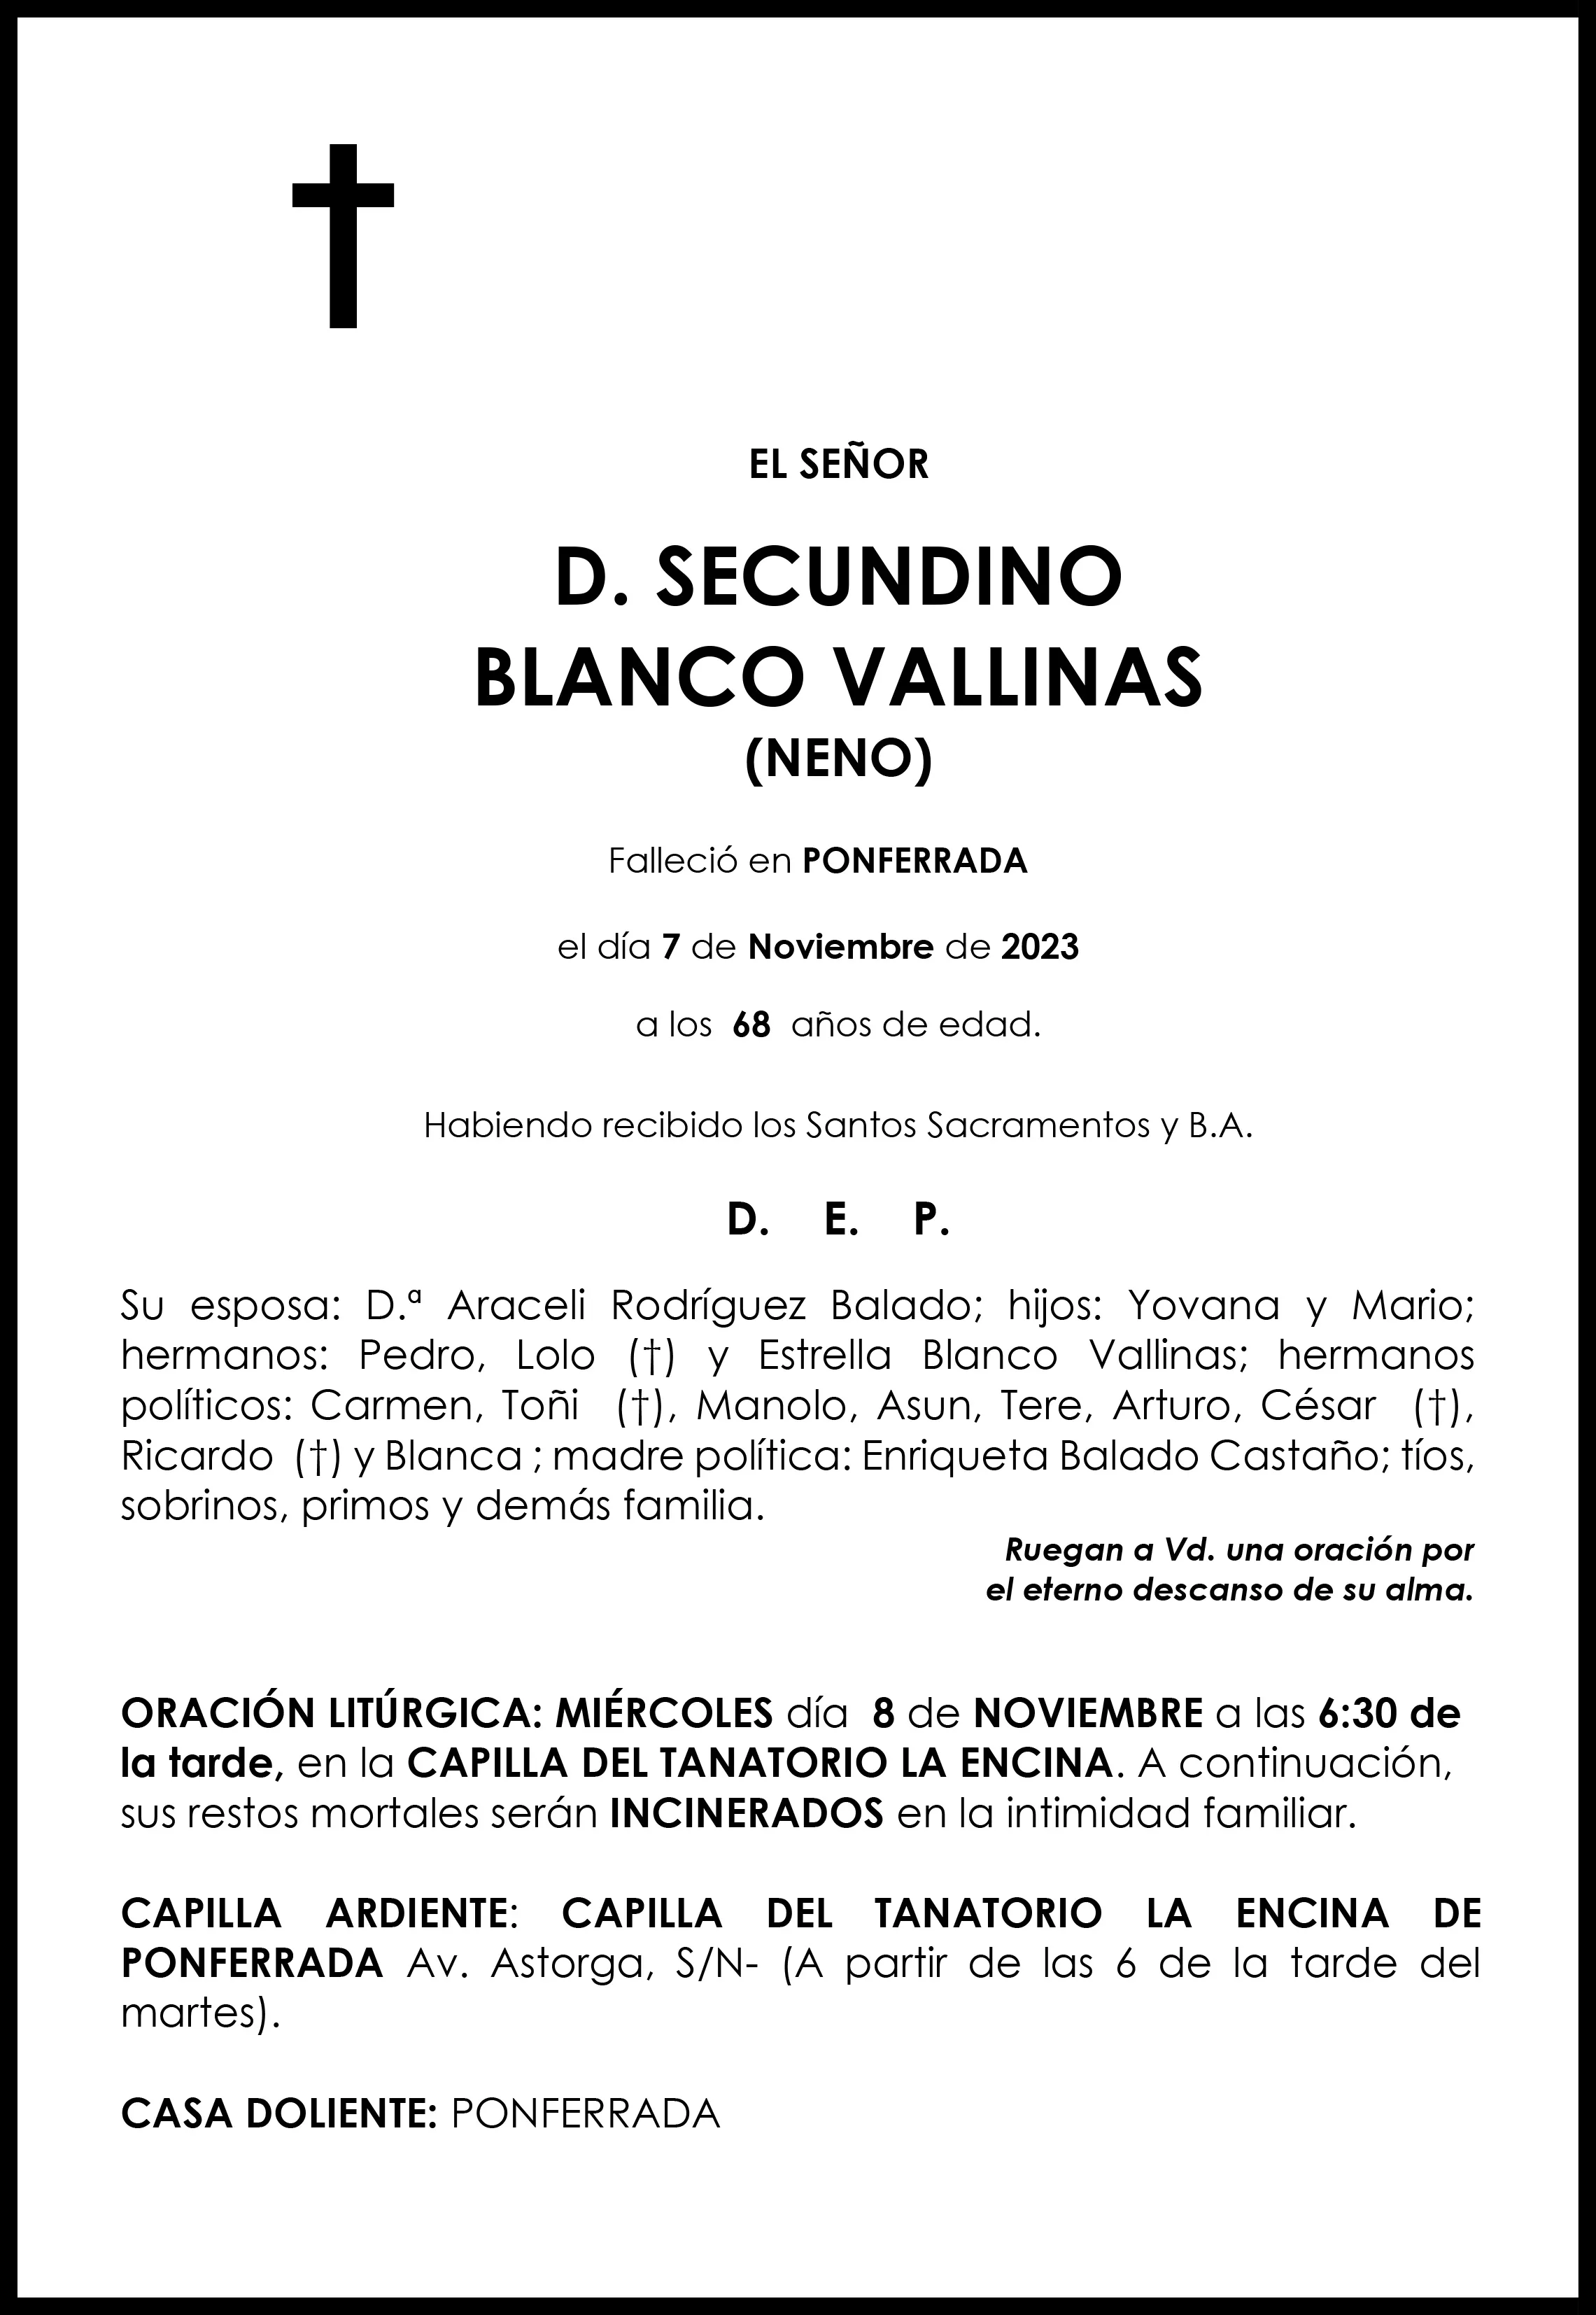 SECUNDINO BLANCO VALLINAS